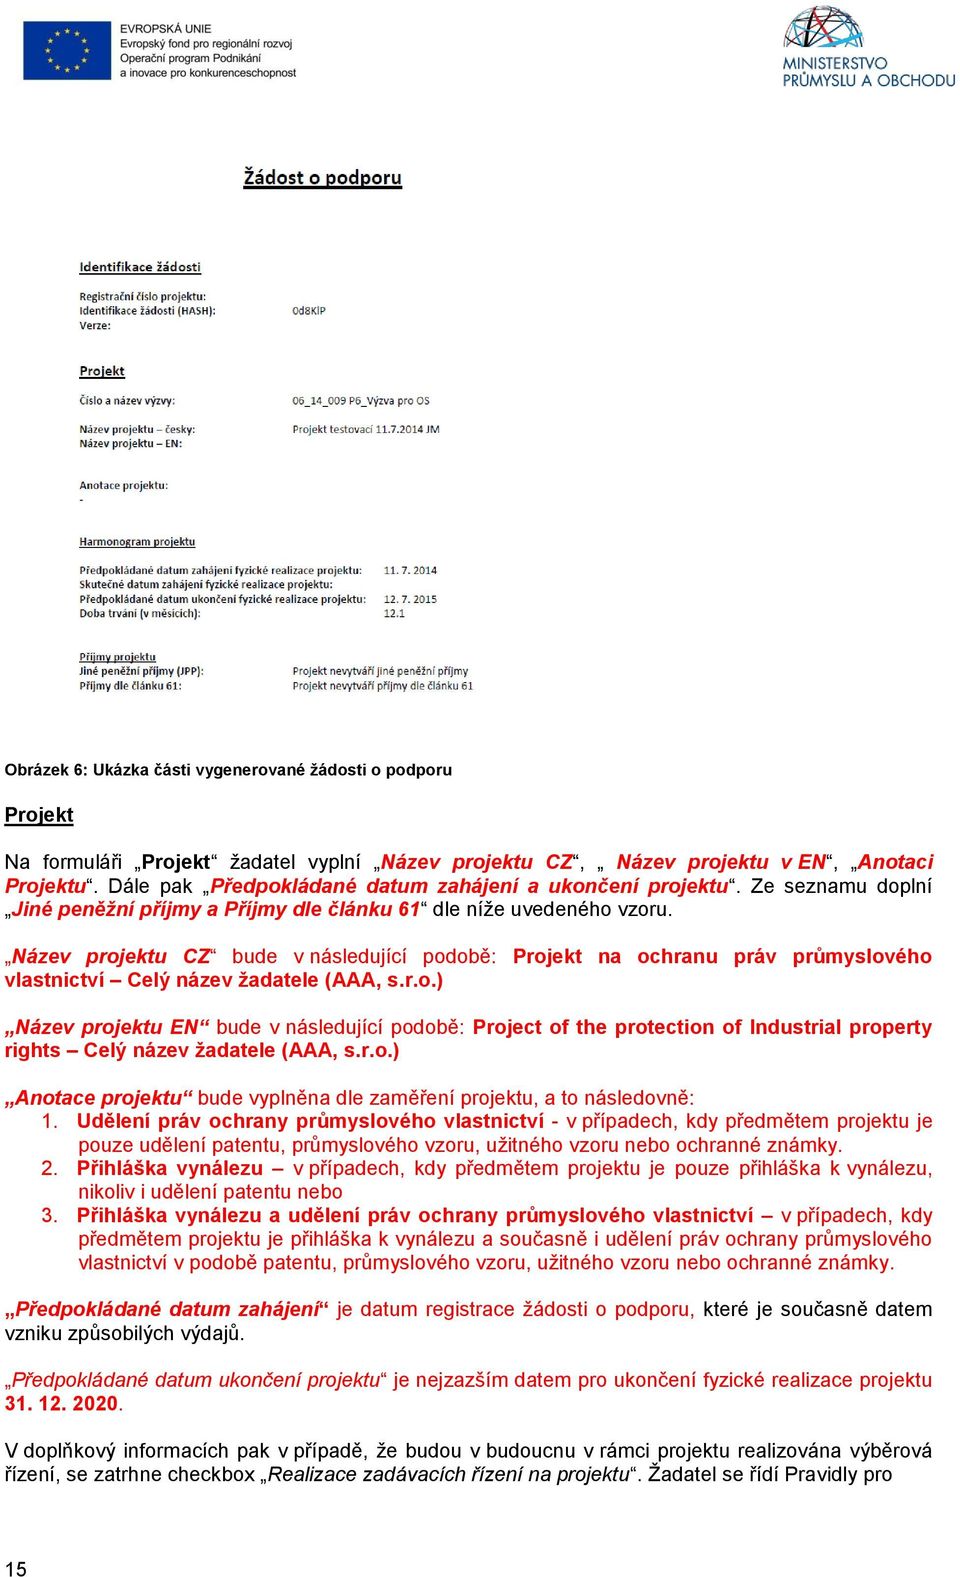 Název projektu CZ bude v následující podobě: Projekt na ochranu práv průmyslového vlastnictví Celý název žadatele (AAA, s.r.o.) Název projektu EN bude v následující podobě: Project of the protection of Industrial property rights Celý název žadatele (AAA, s.